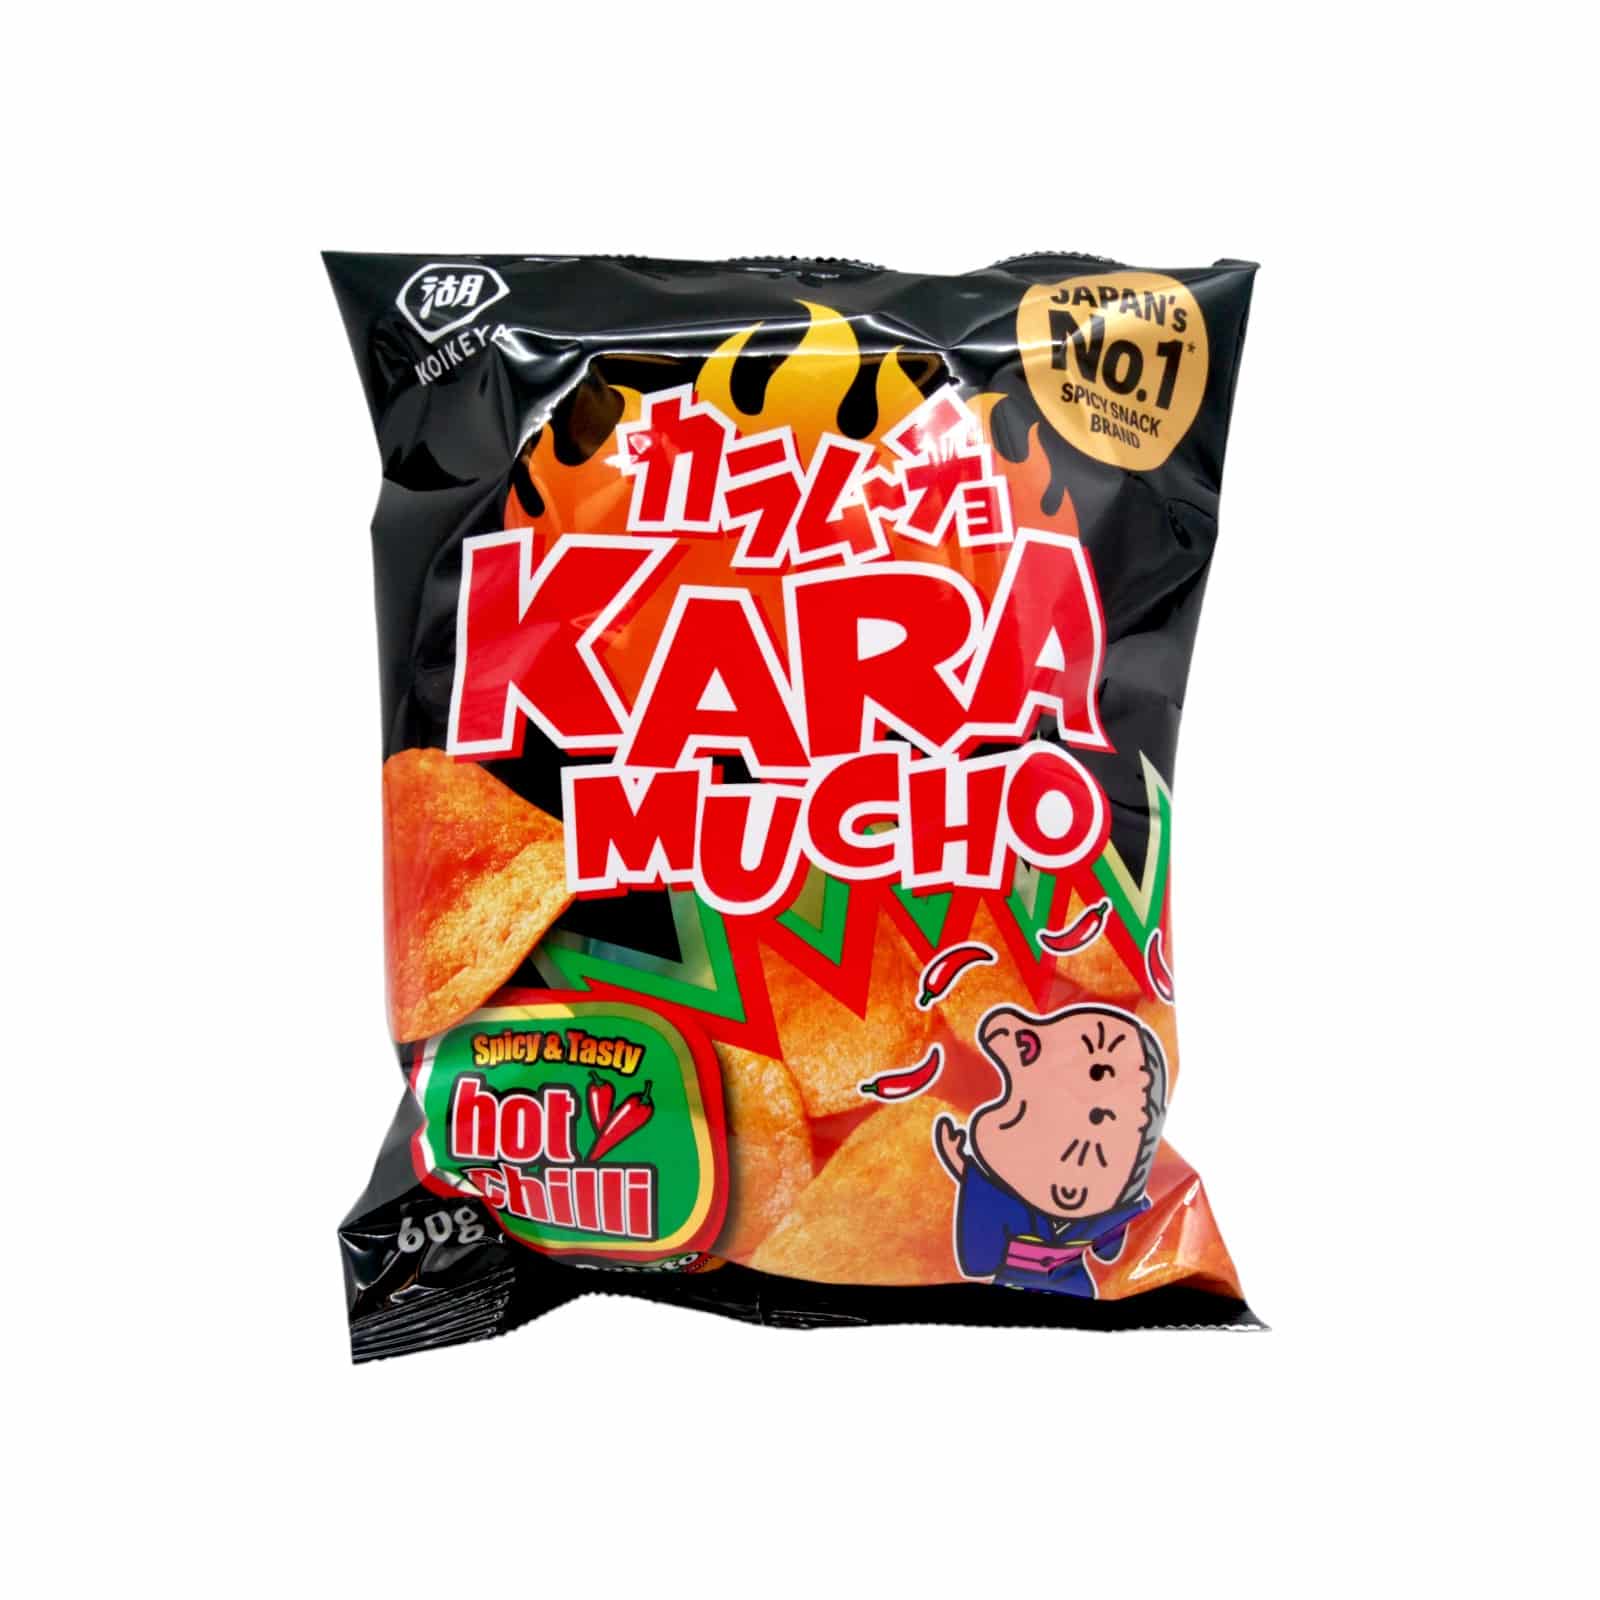 Koikeya Chips Karamucho Chili 60g